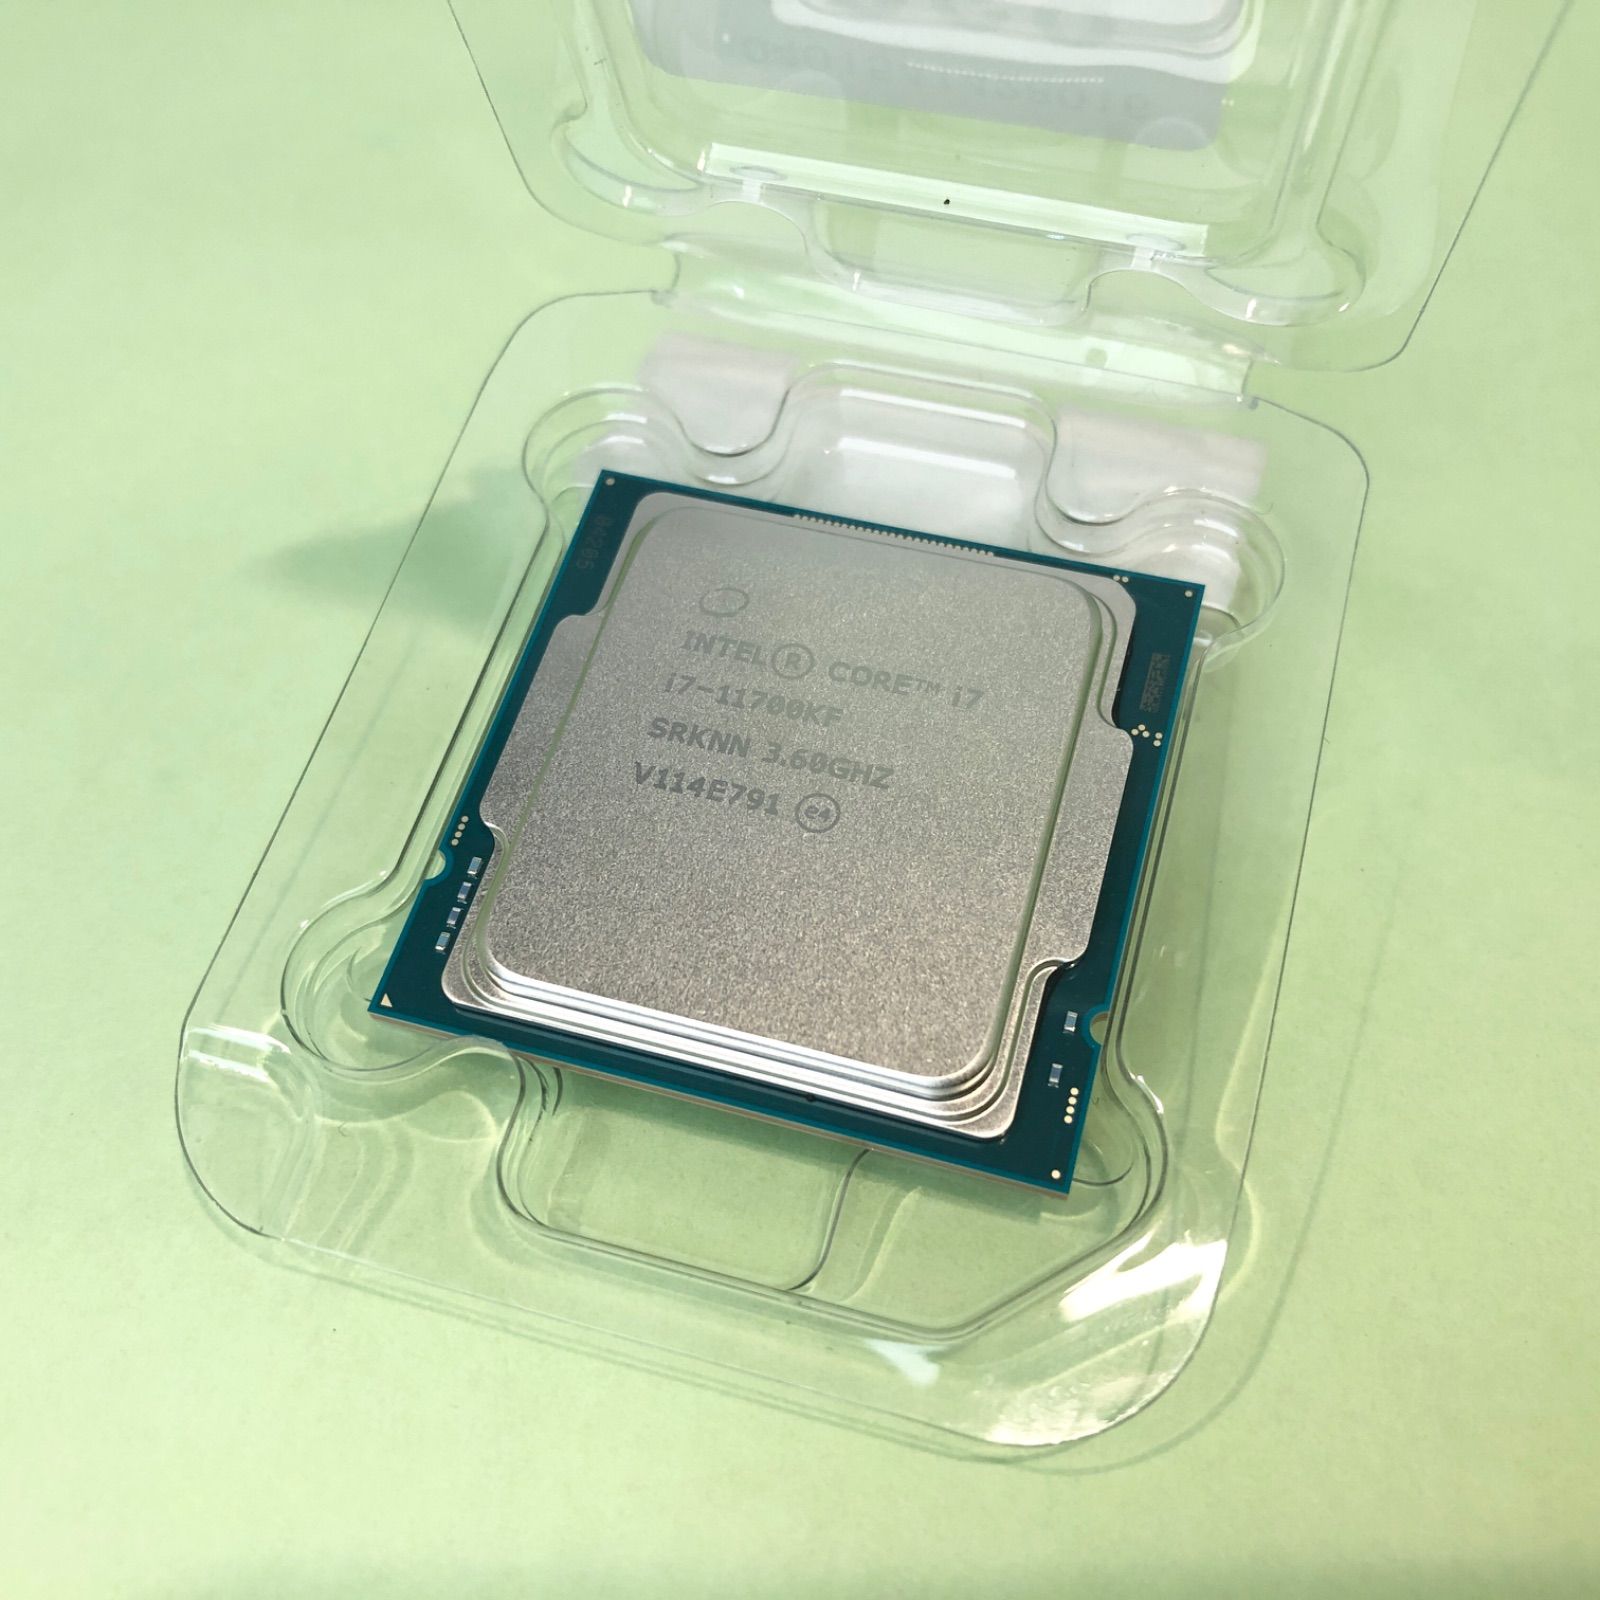 Intel (インテル) Core i7-11700KF